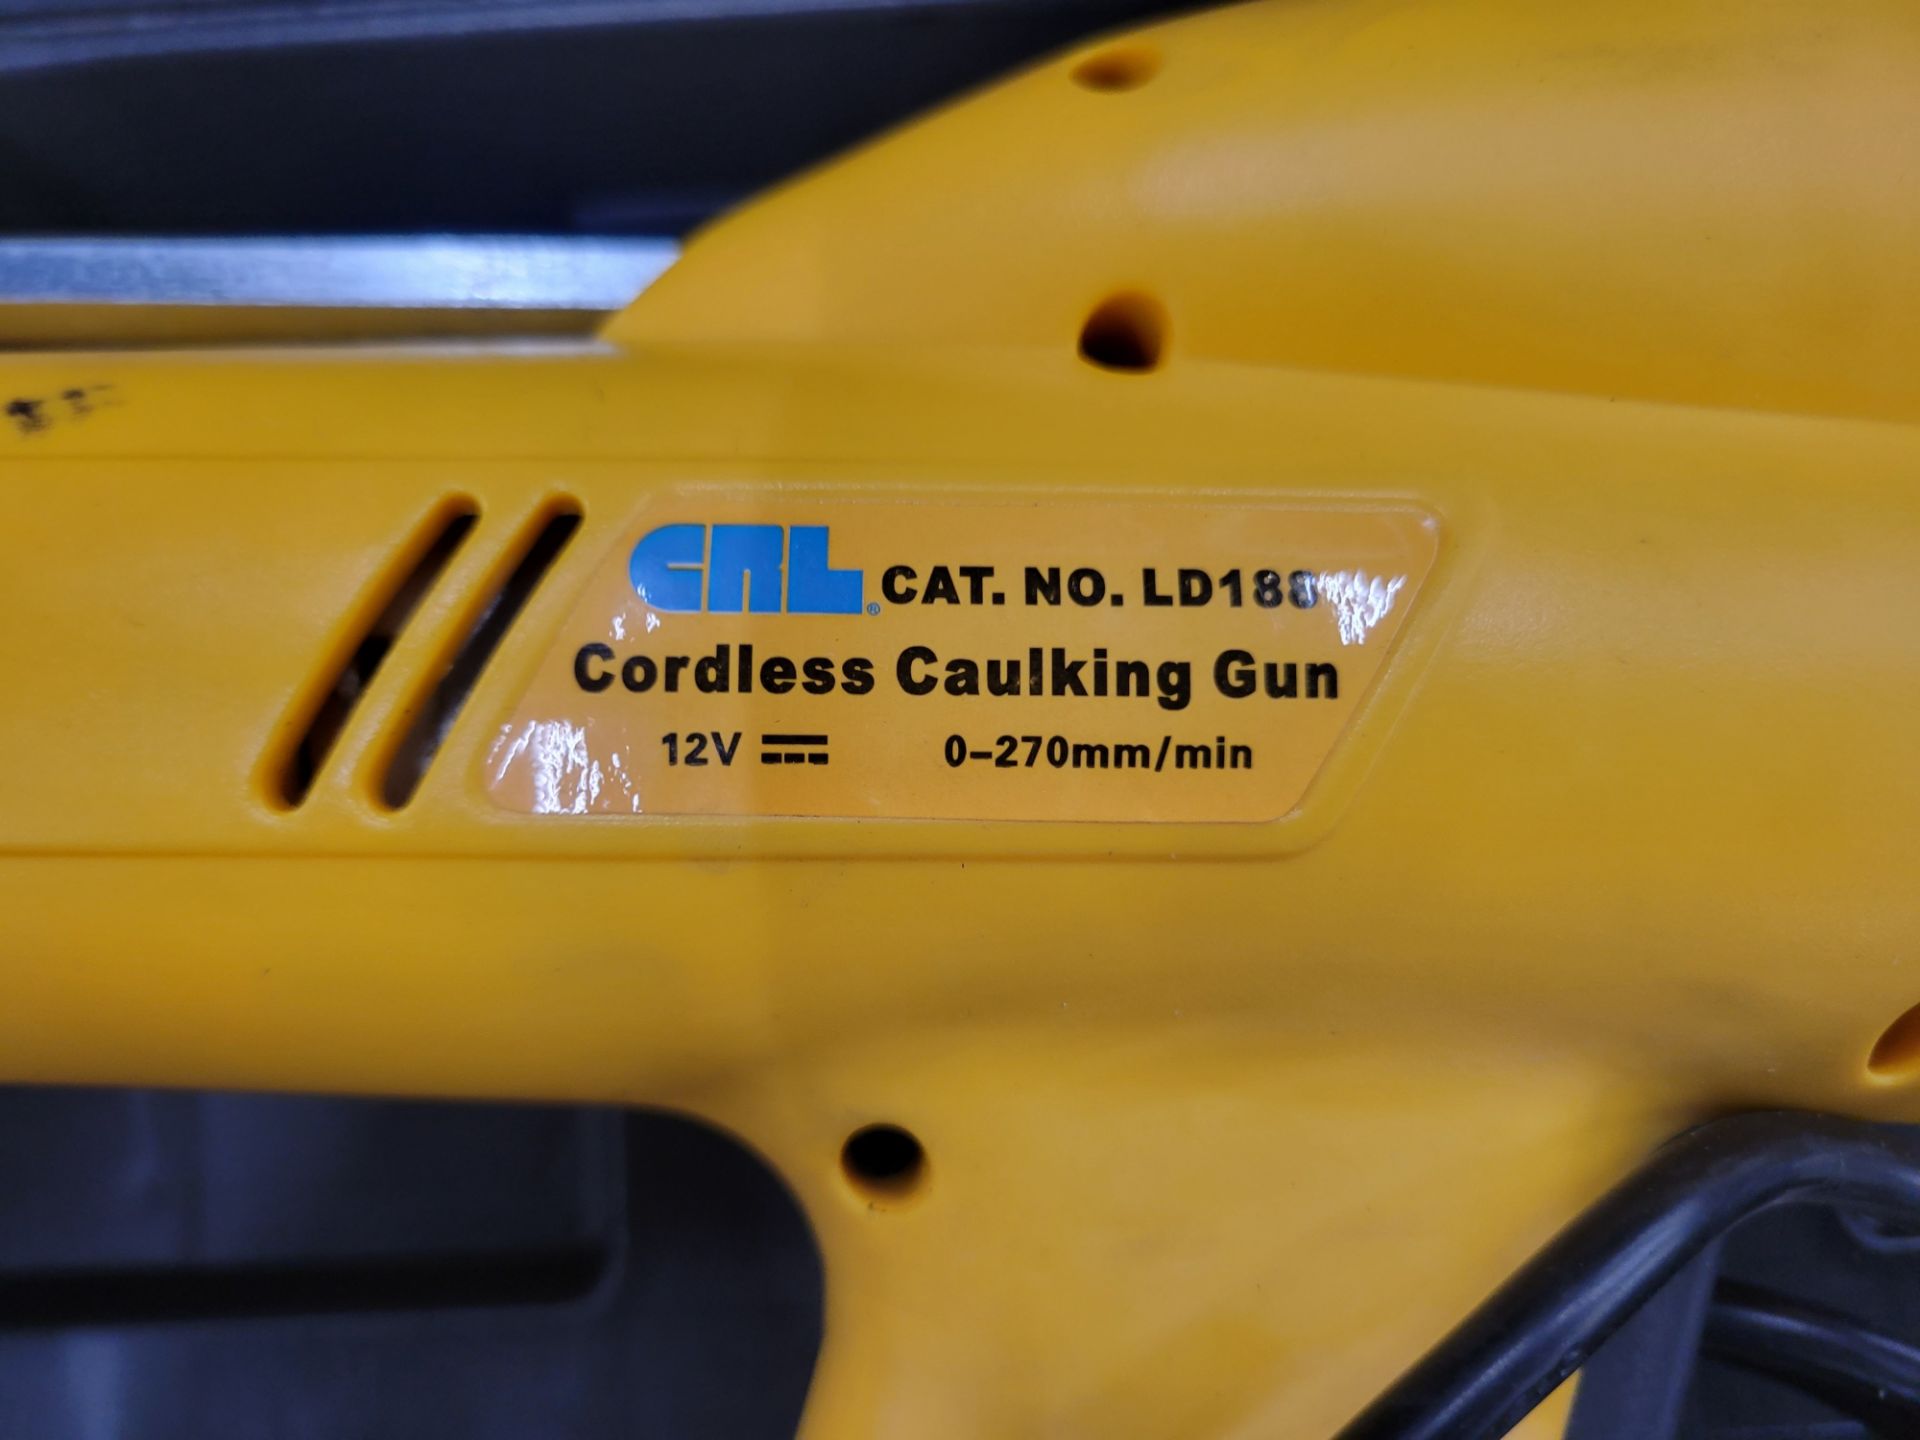 CRL LD188 Cordless Caulking Gun - Image 3 of 4